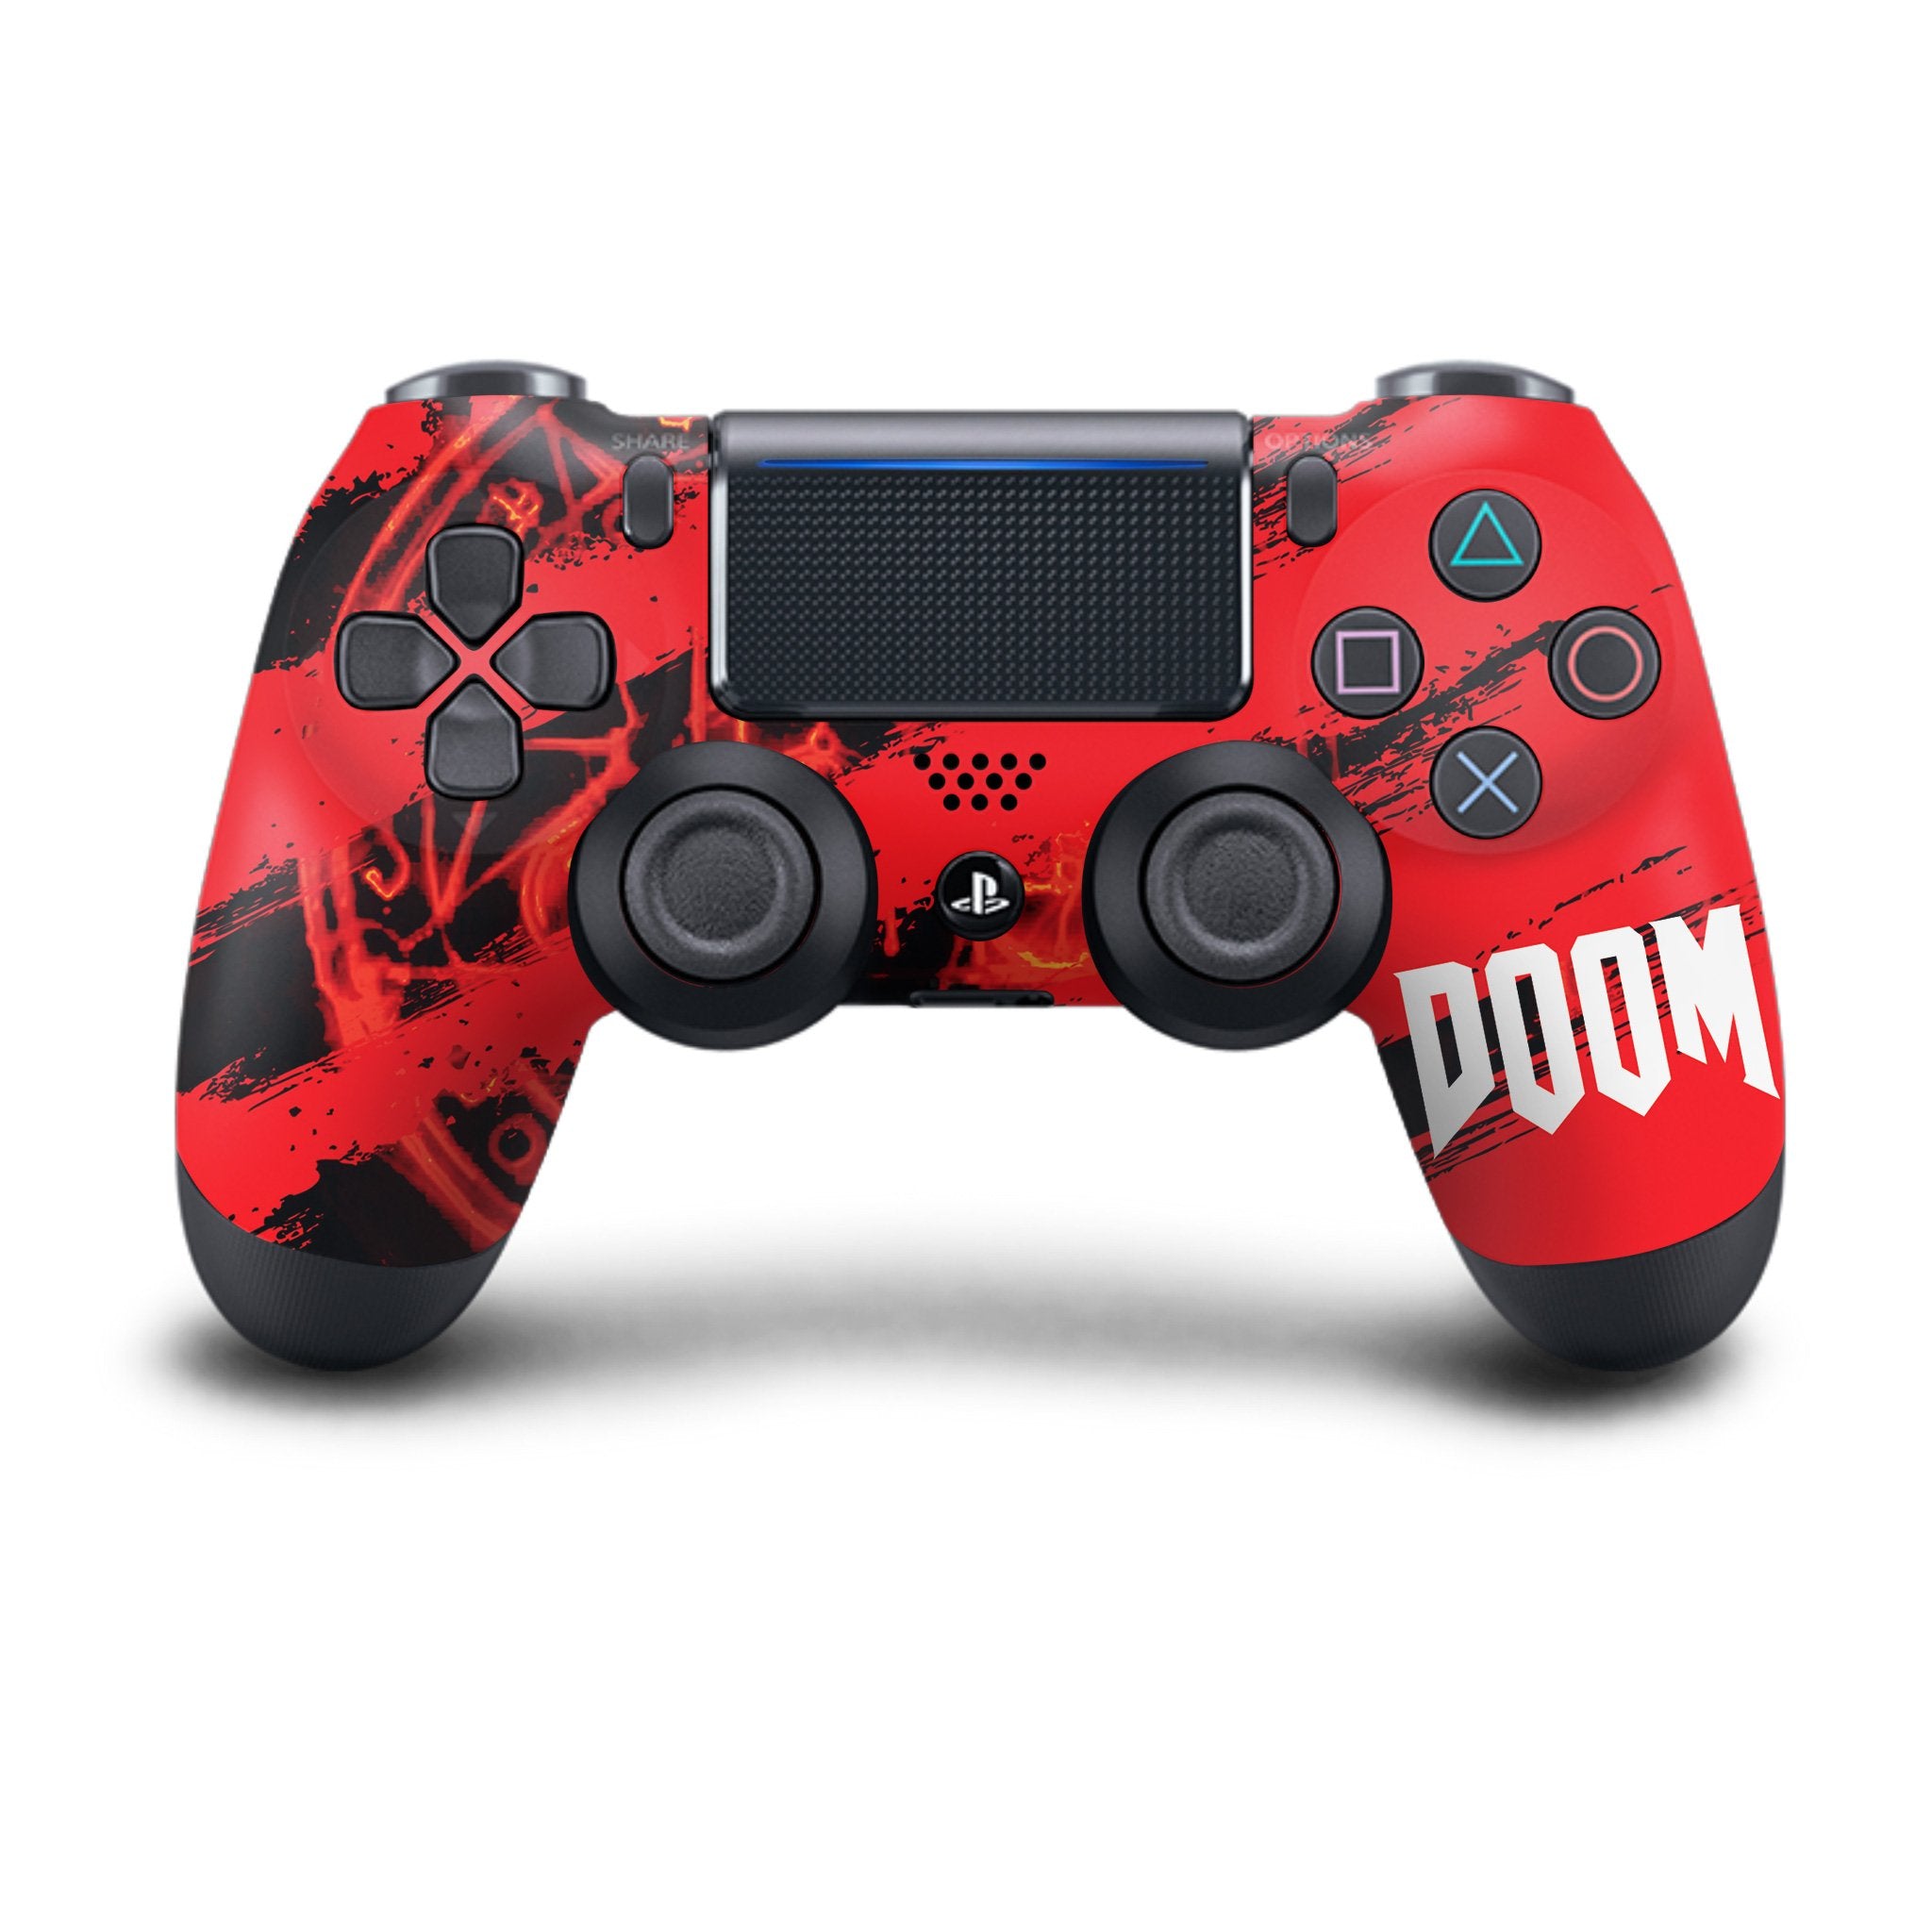 Doom PS4 Custom Controller Exclusive